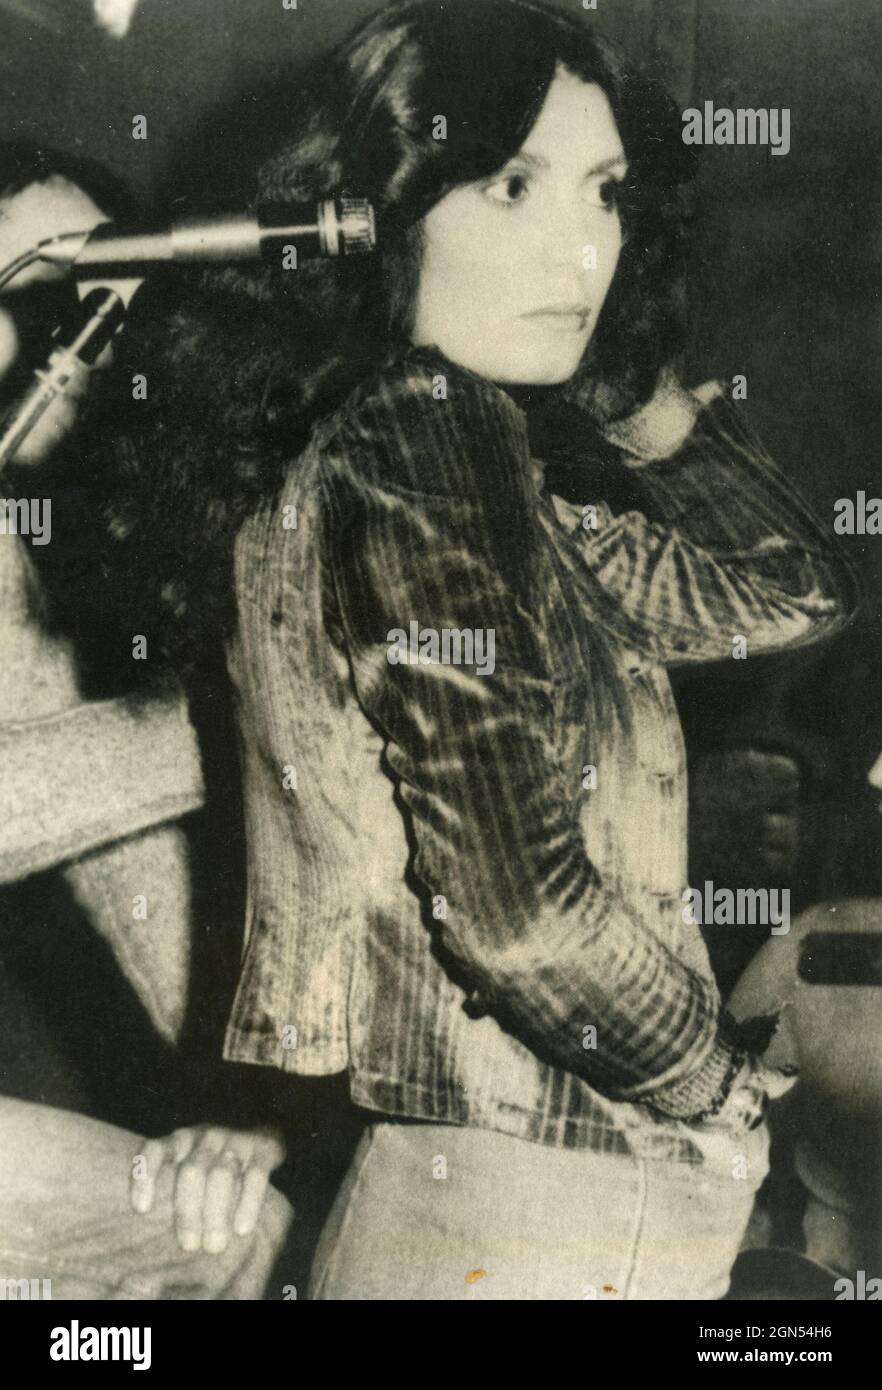 Italian singer and songwriter Loredana Bertè, 1980s Stock Photo